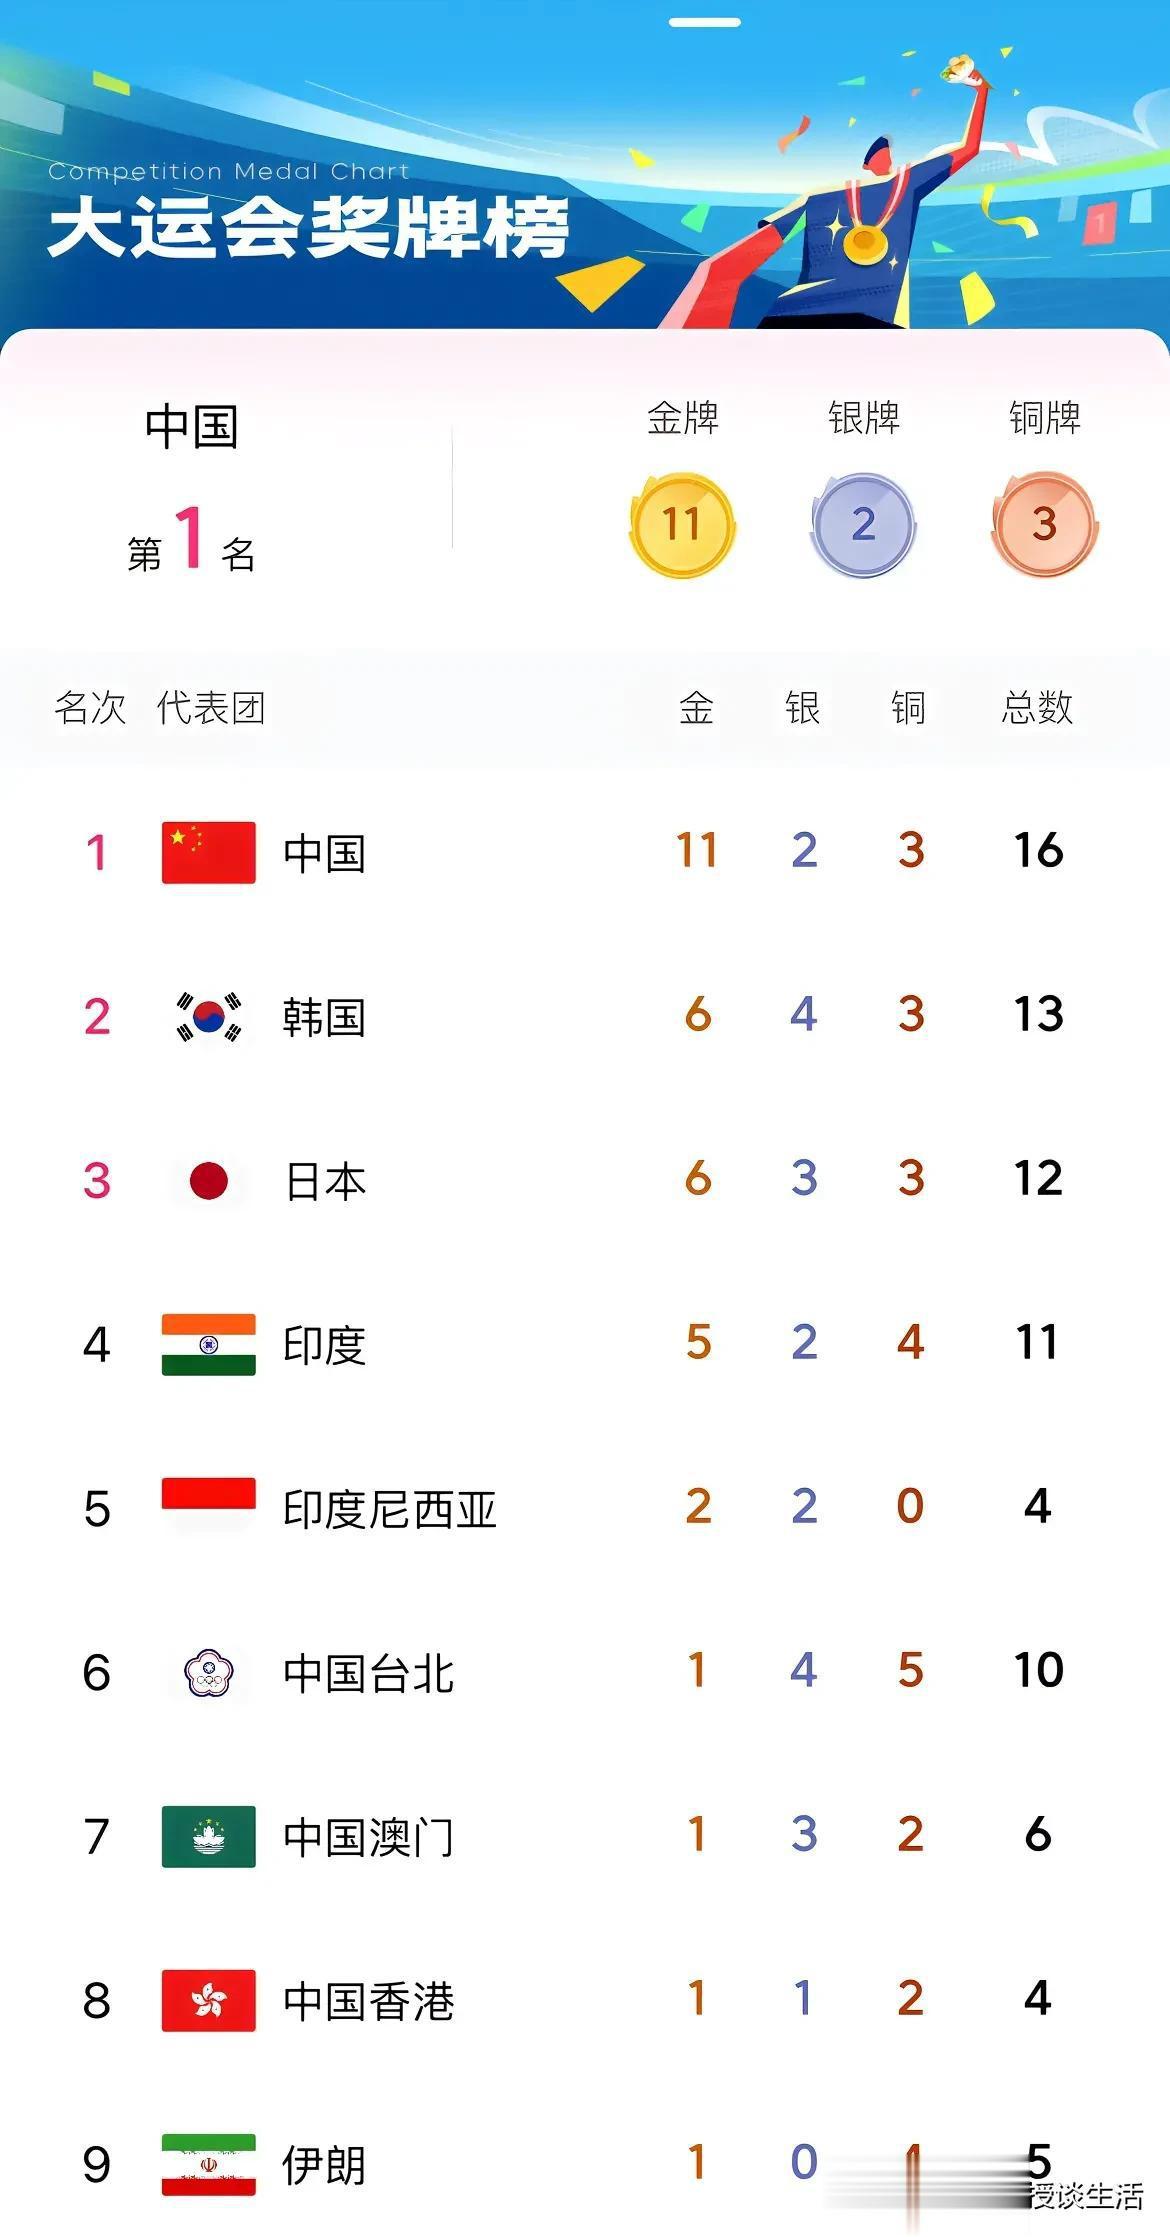 中国队暂列金牌榜和奖牌榜第一名。前三名分别是中国、韩国、日本。

成都第31届世(1)